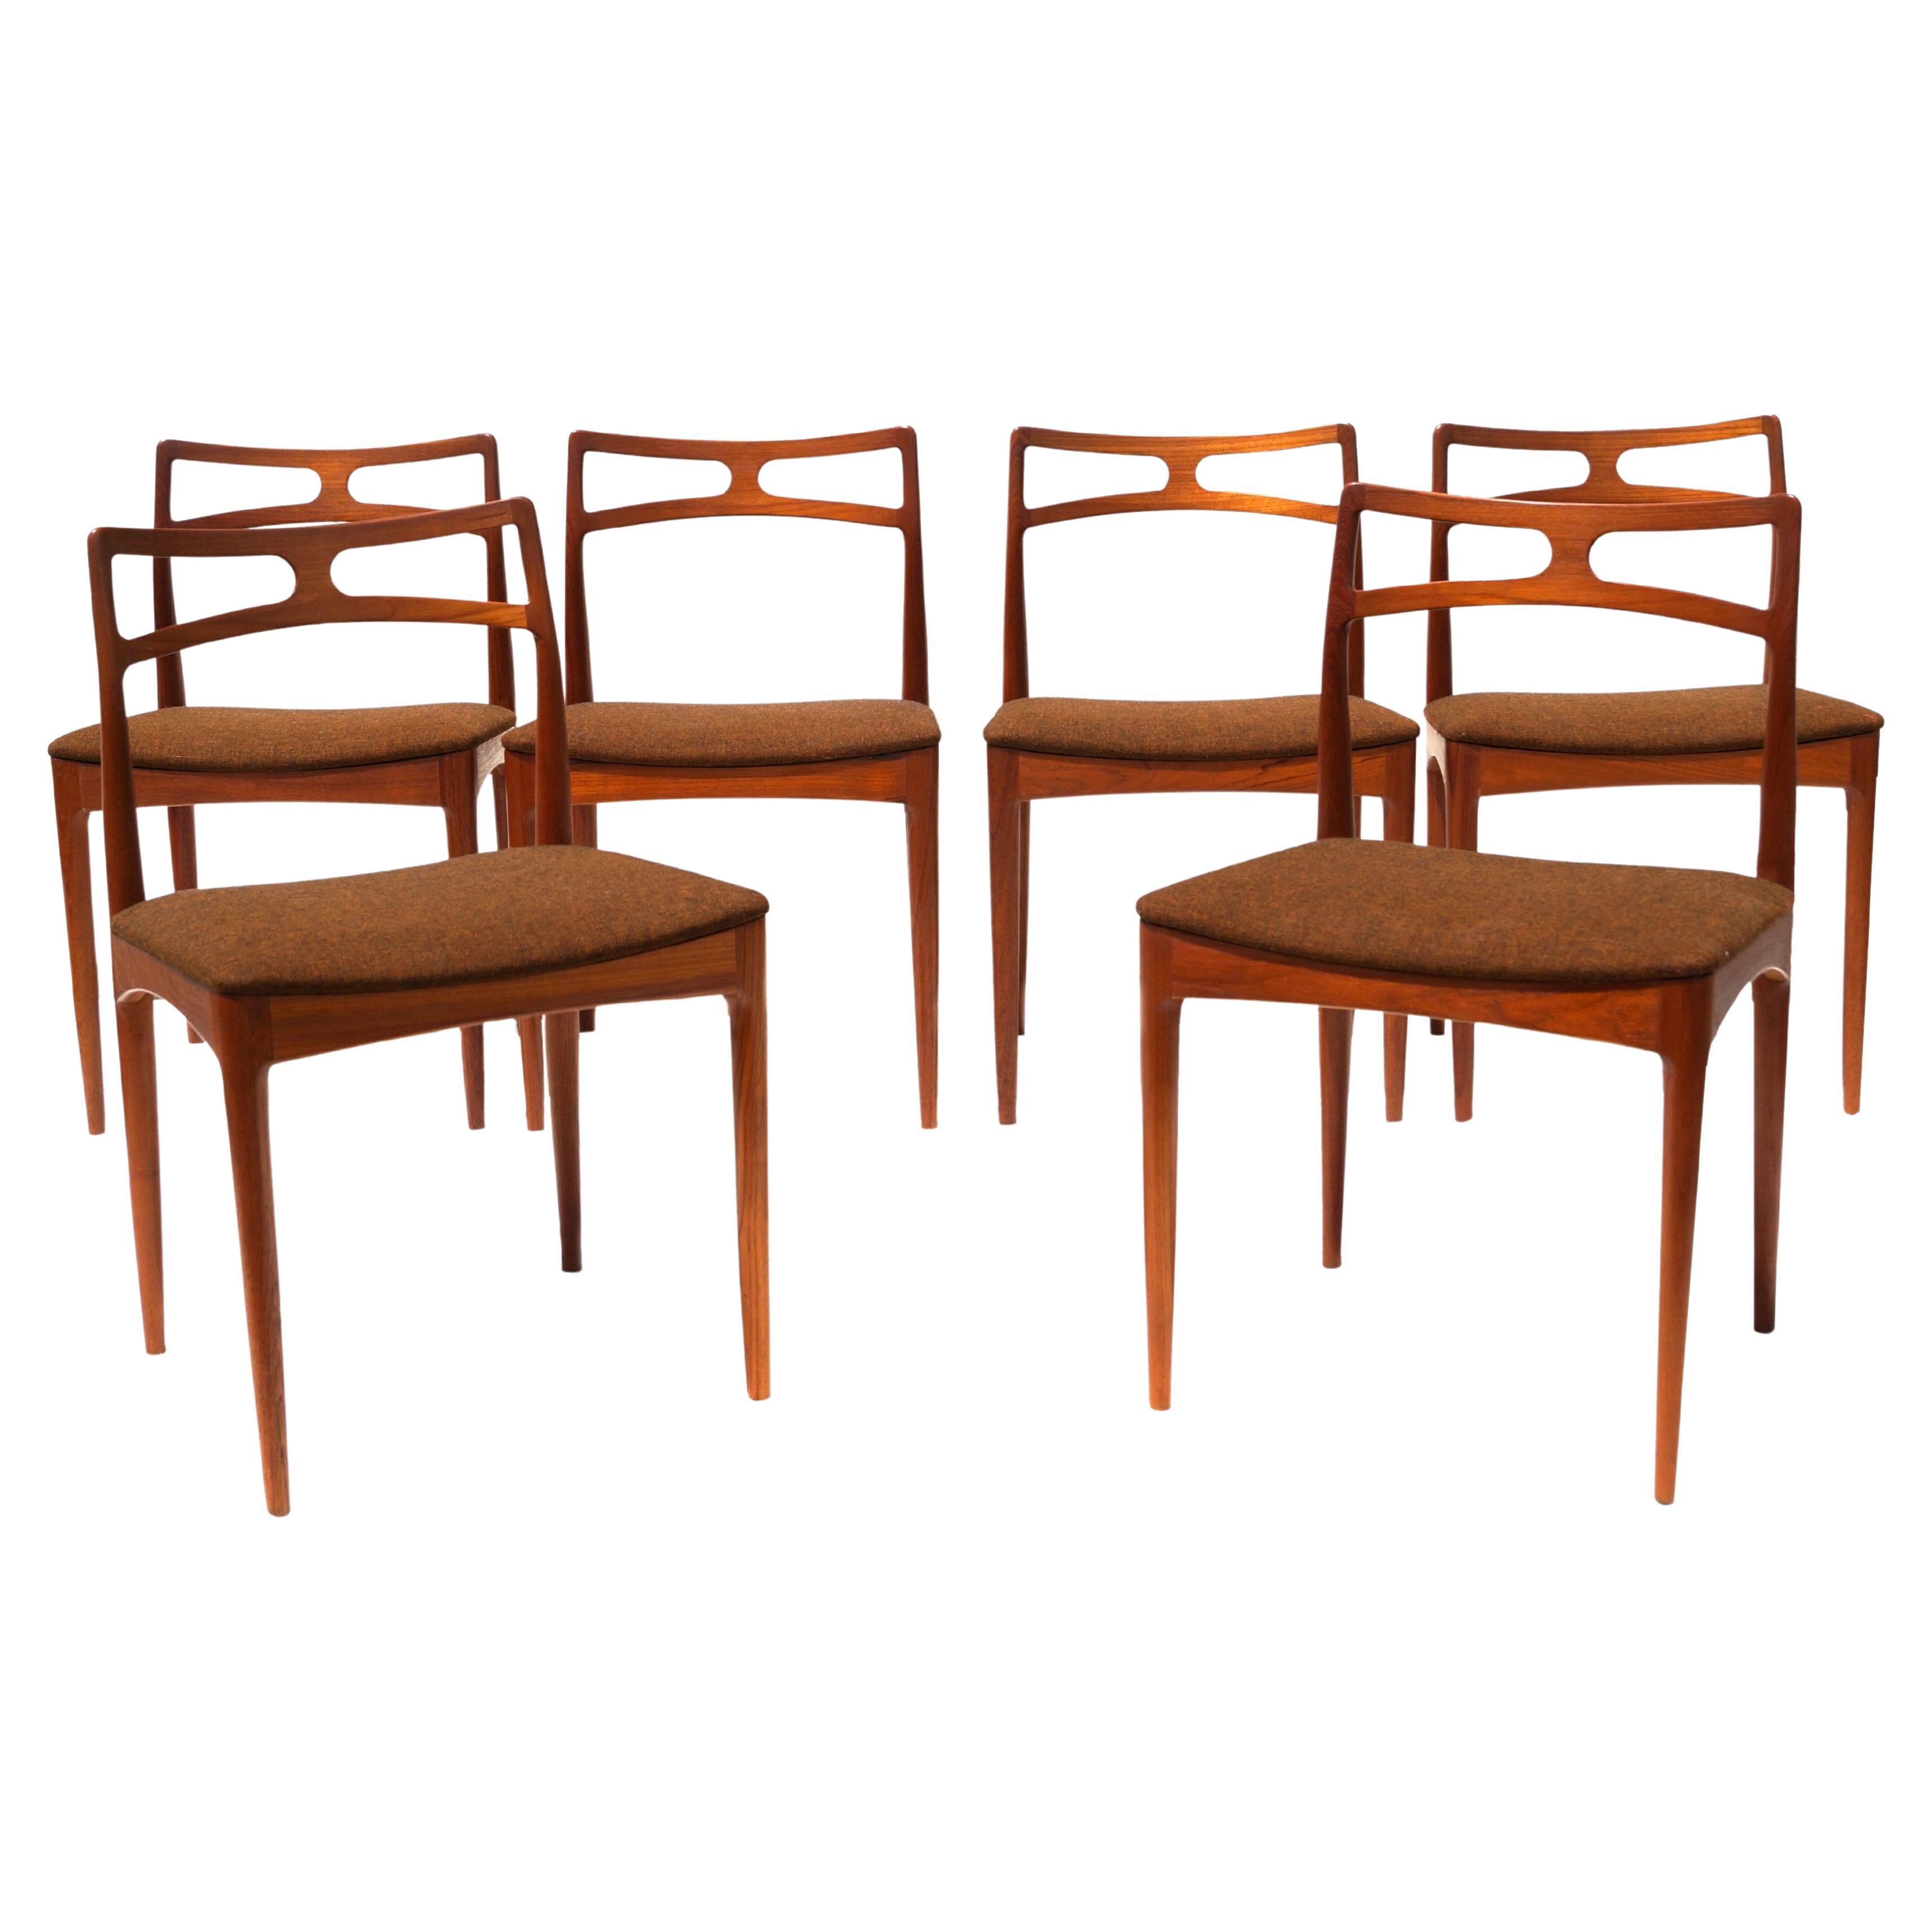 Set of 6 Johannes Andersen Teak Danish Modern Dining Room Chairs Denmark, 1960's